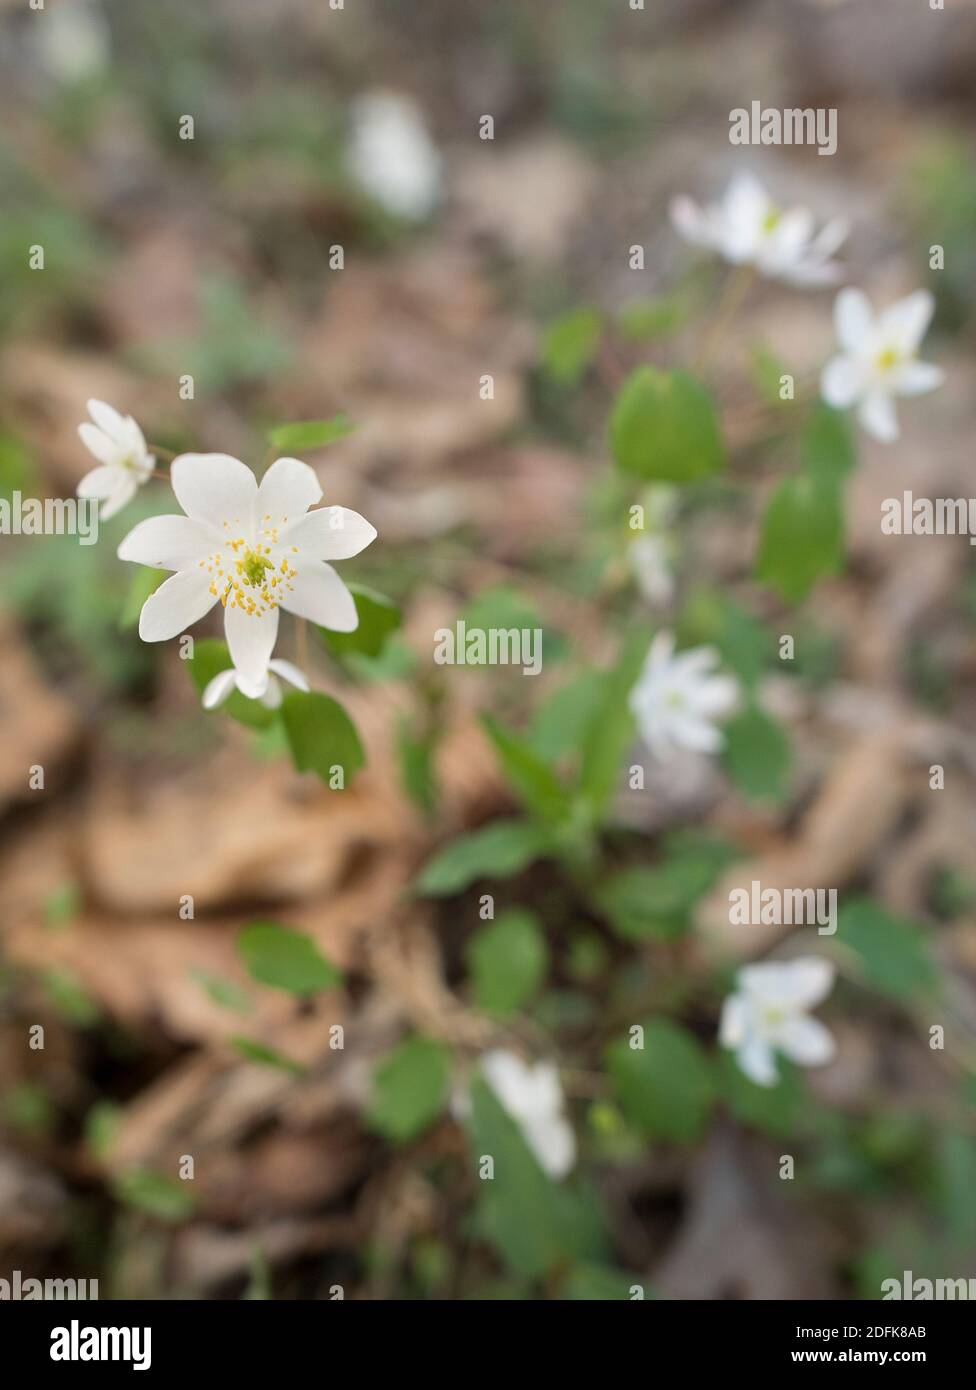 Rue-anemone in fiore sul pavimento della foresta. Foto Stock